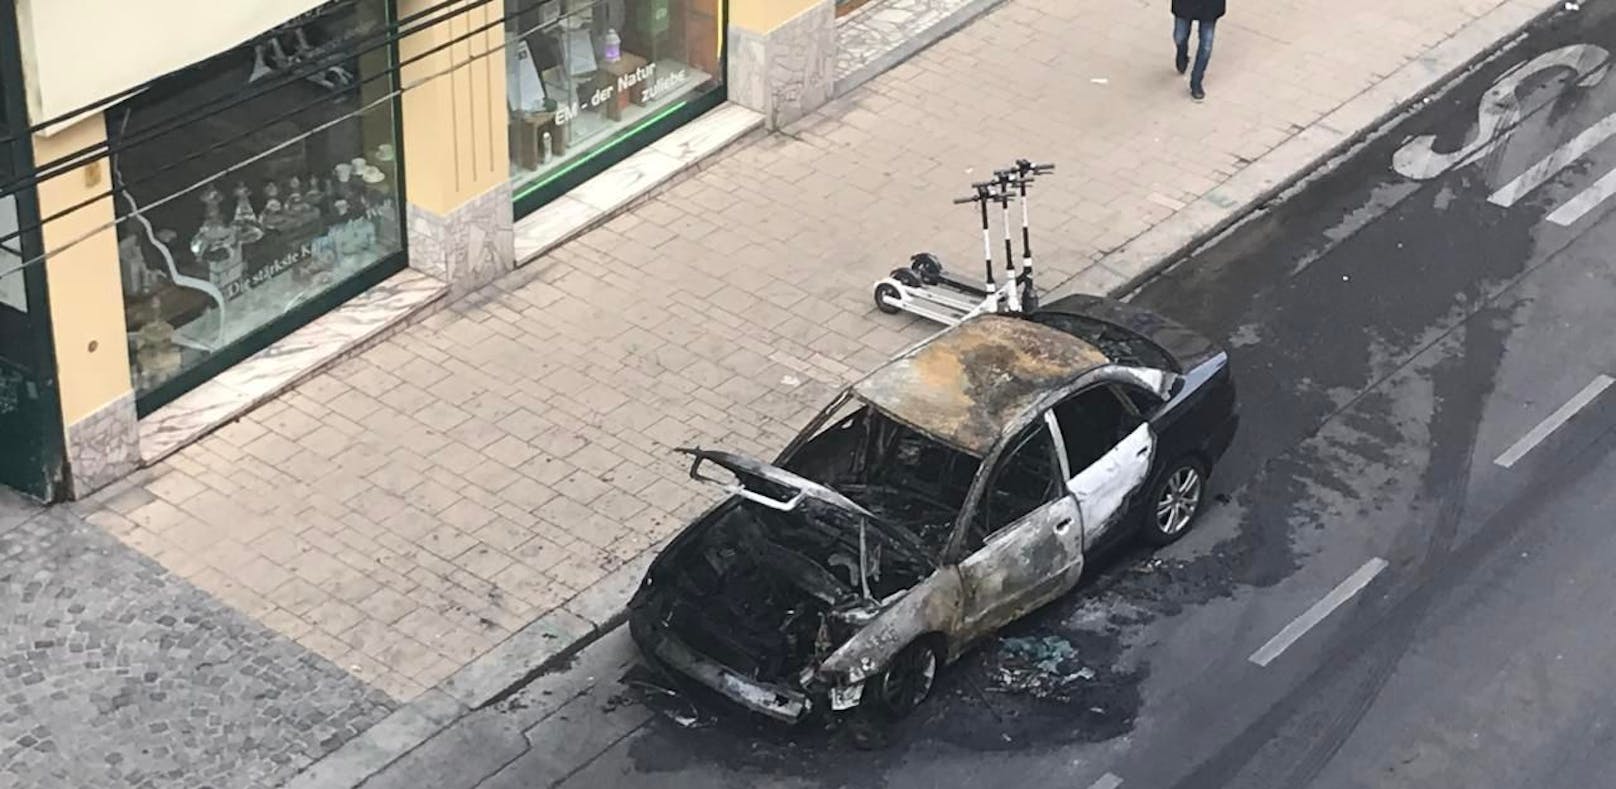 Nicht mehr zu retten: Komplett zerstört wurde ein Fahrzeug bei einem Brand im Wiener Bezirk Neubau.